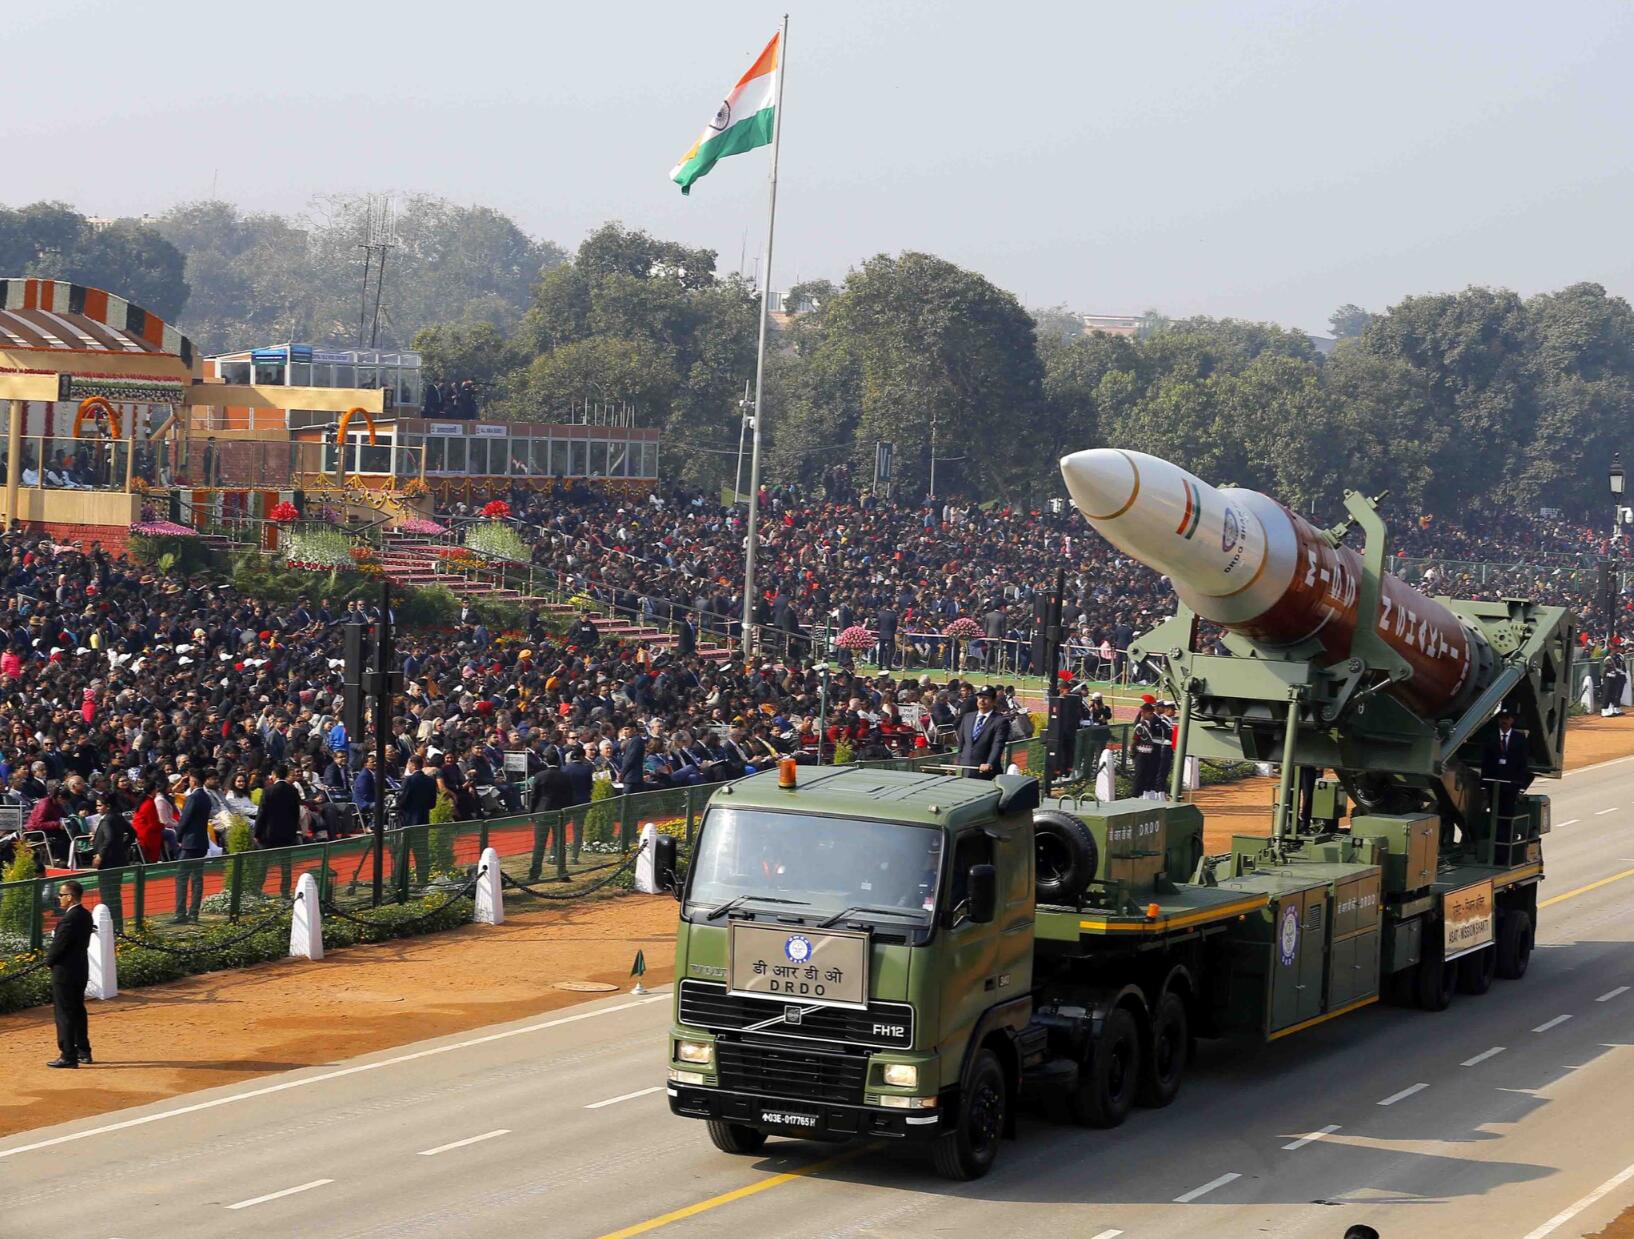 16 印度大阅兵亮出多款新武器 硕大反卫星拦截弹抢眼